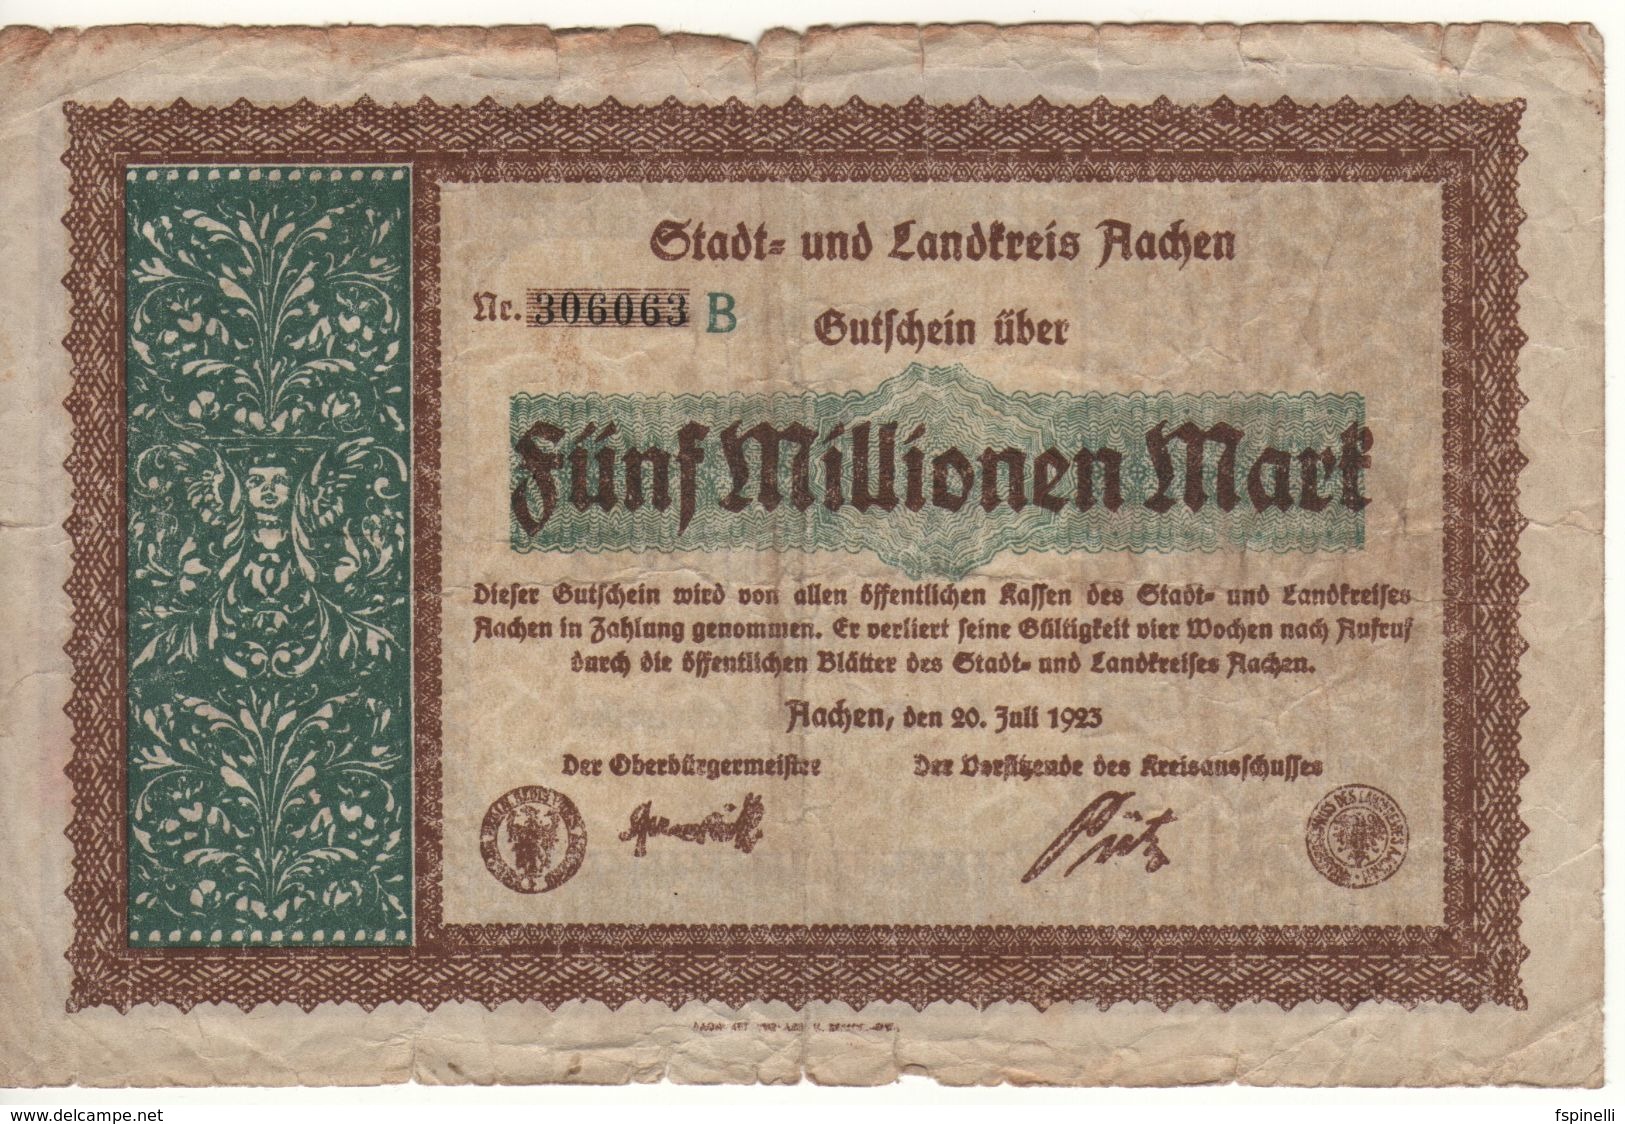 GERMANY  5 Millionen Mark     Aachen 20.july 1923 - Bundeskassenschein